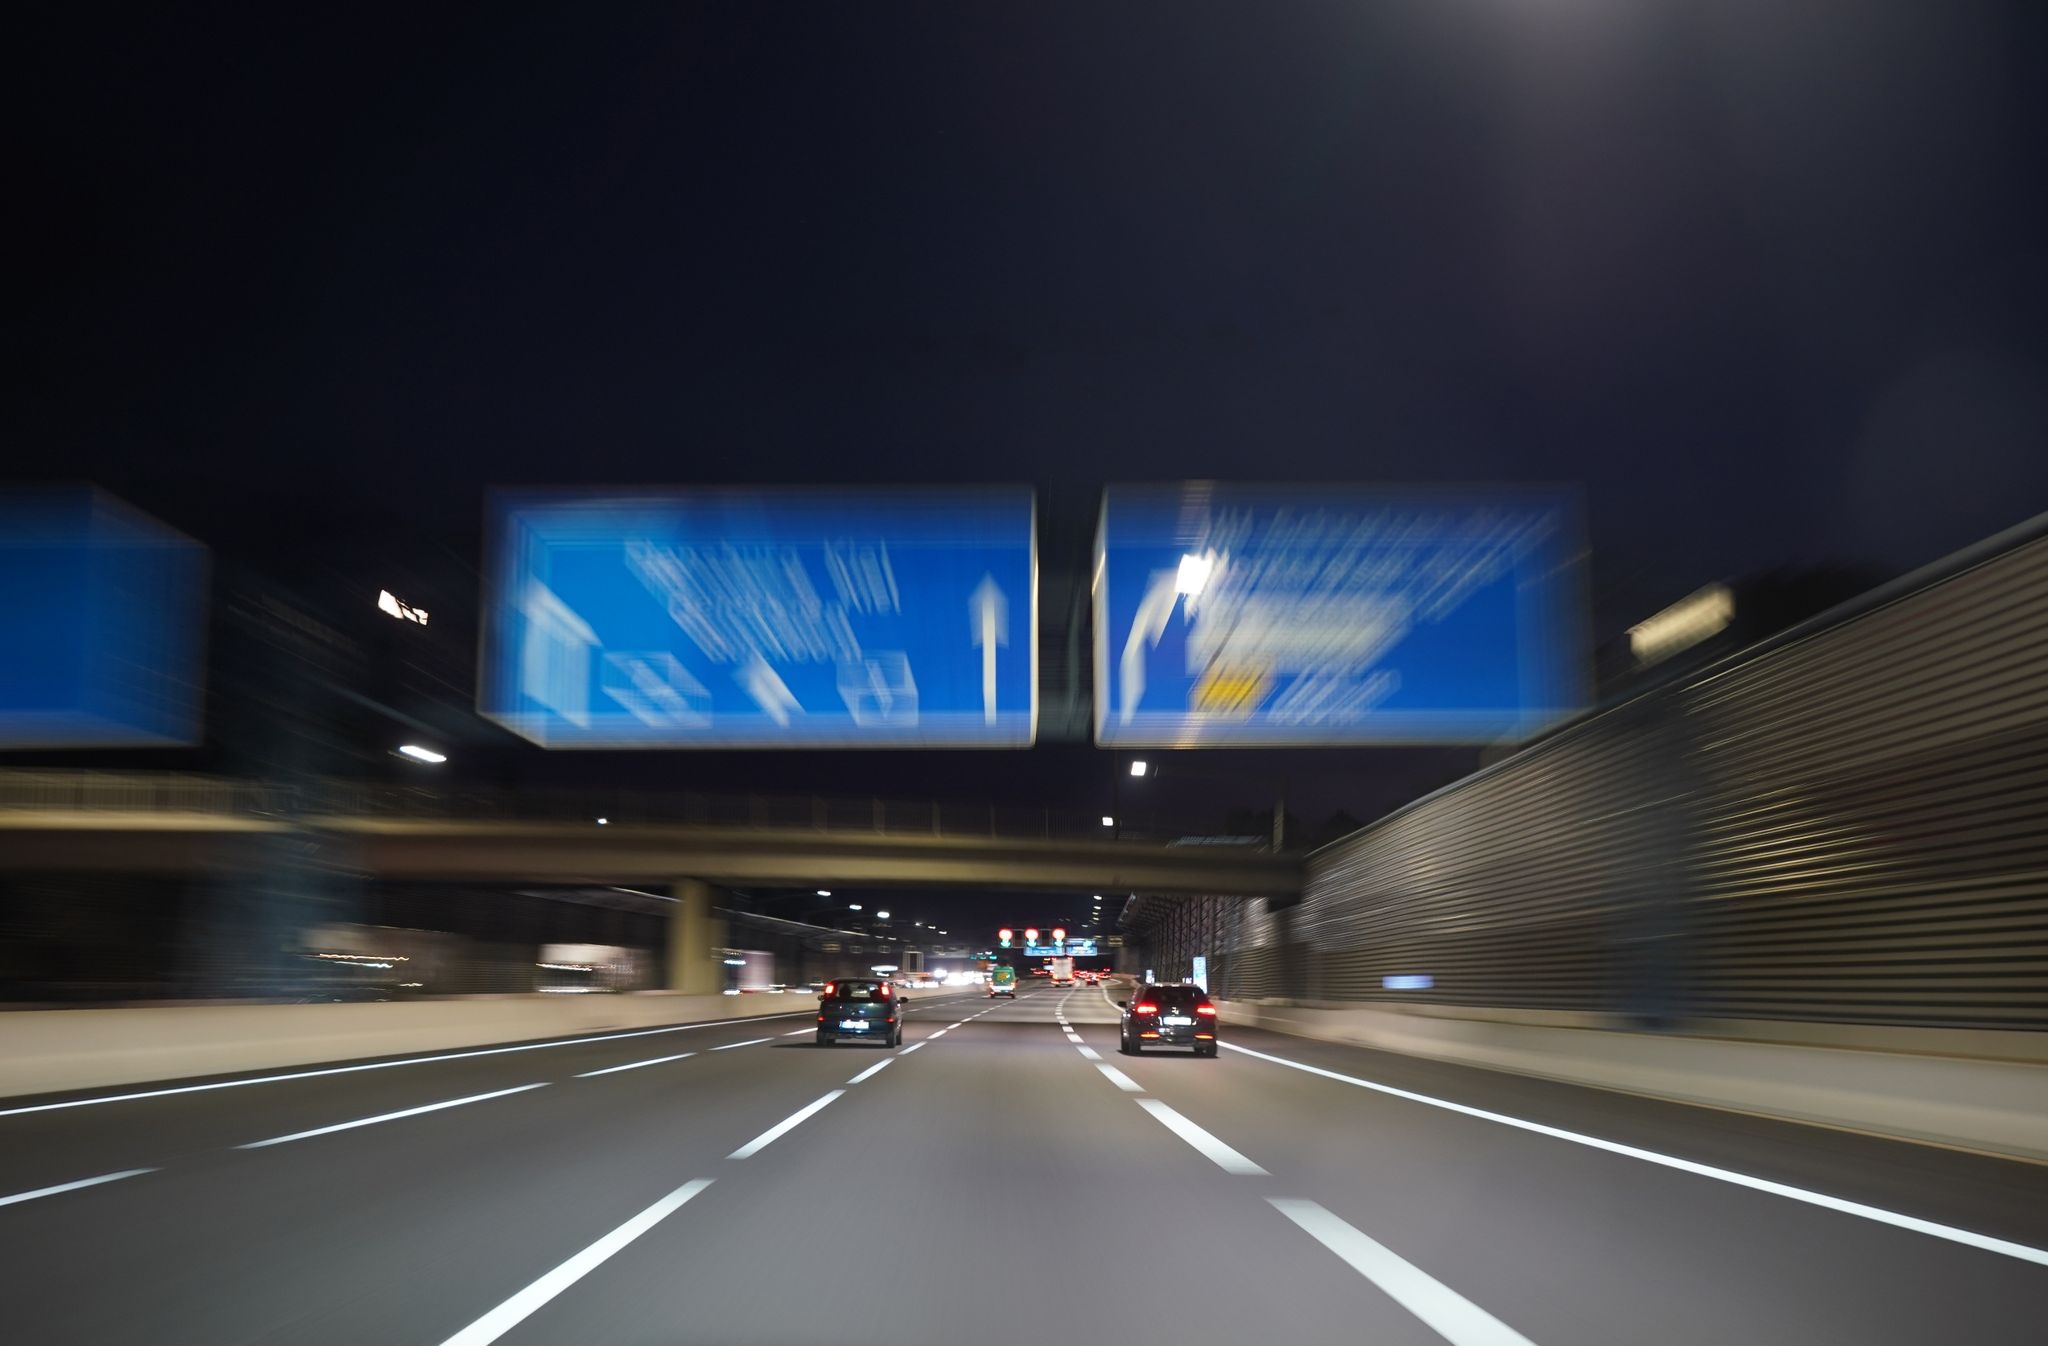 Die FDP will Autobahnen schneller bauen lassen. Das lehnen die Grünen ab.